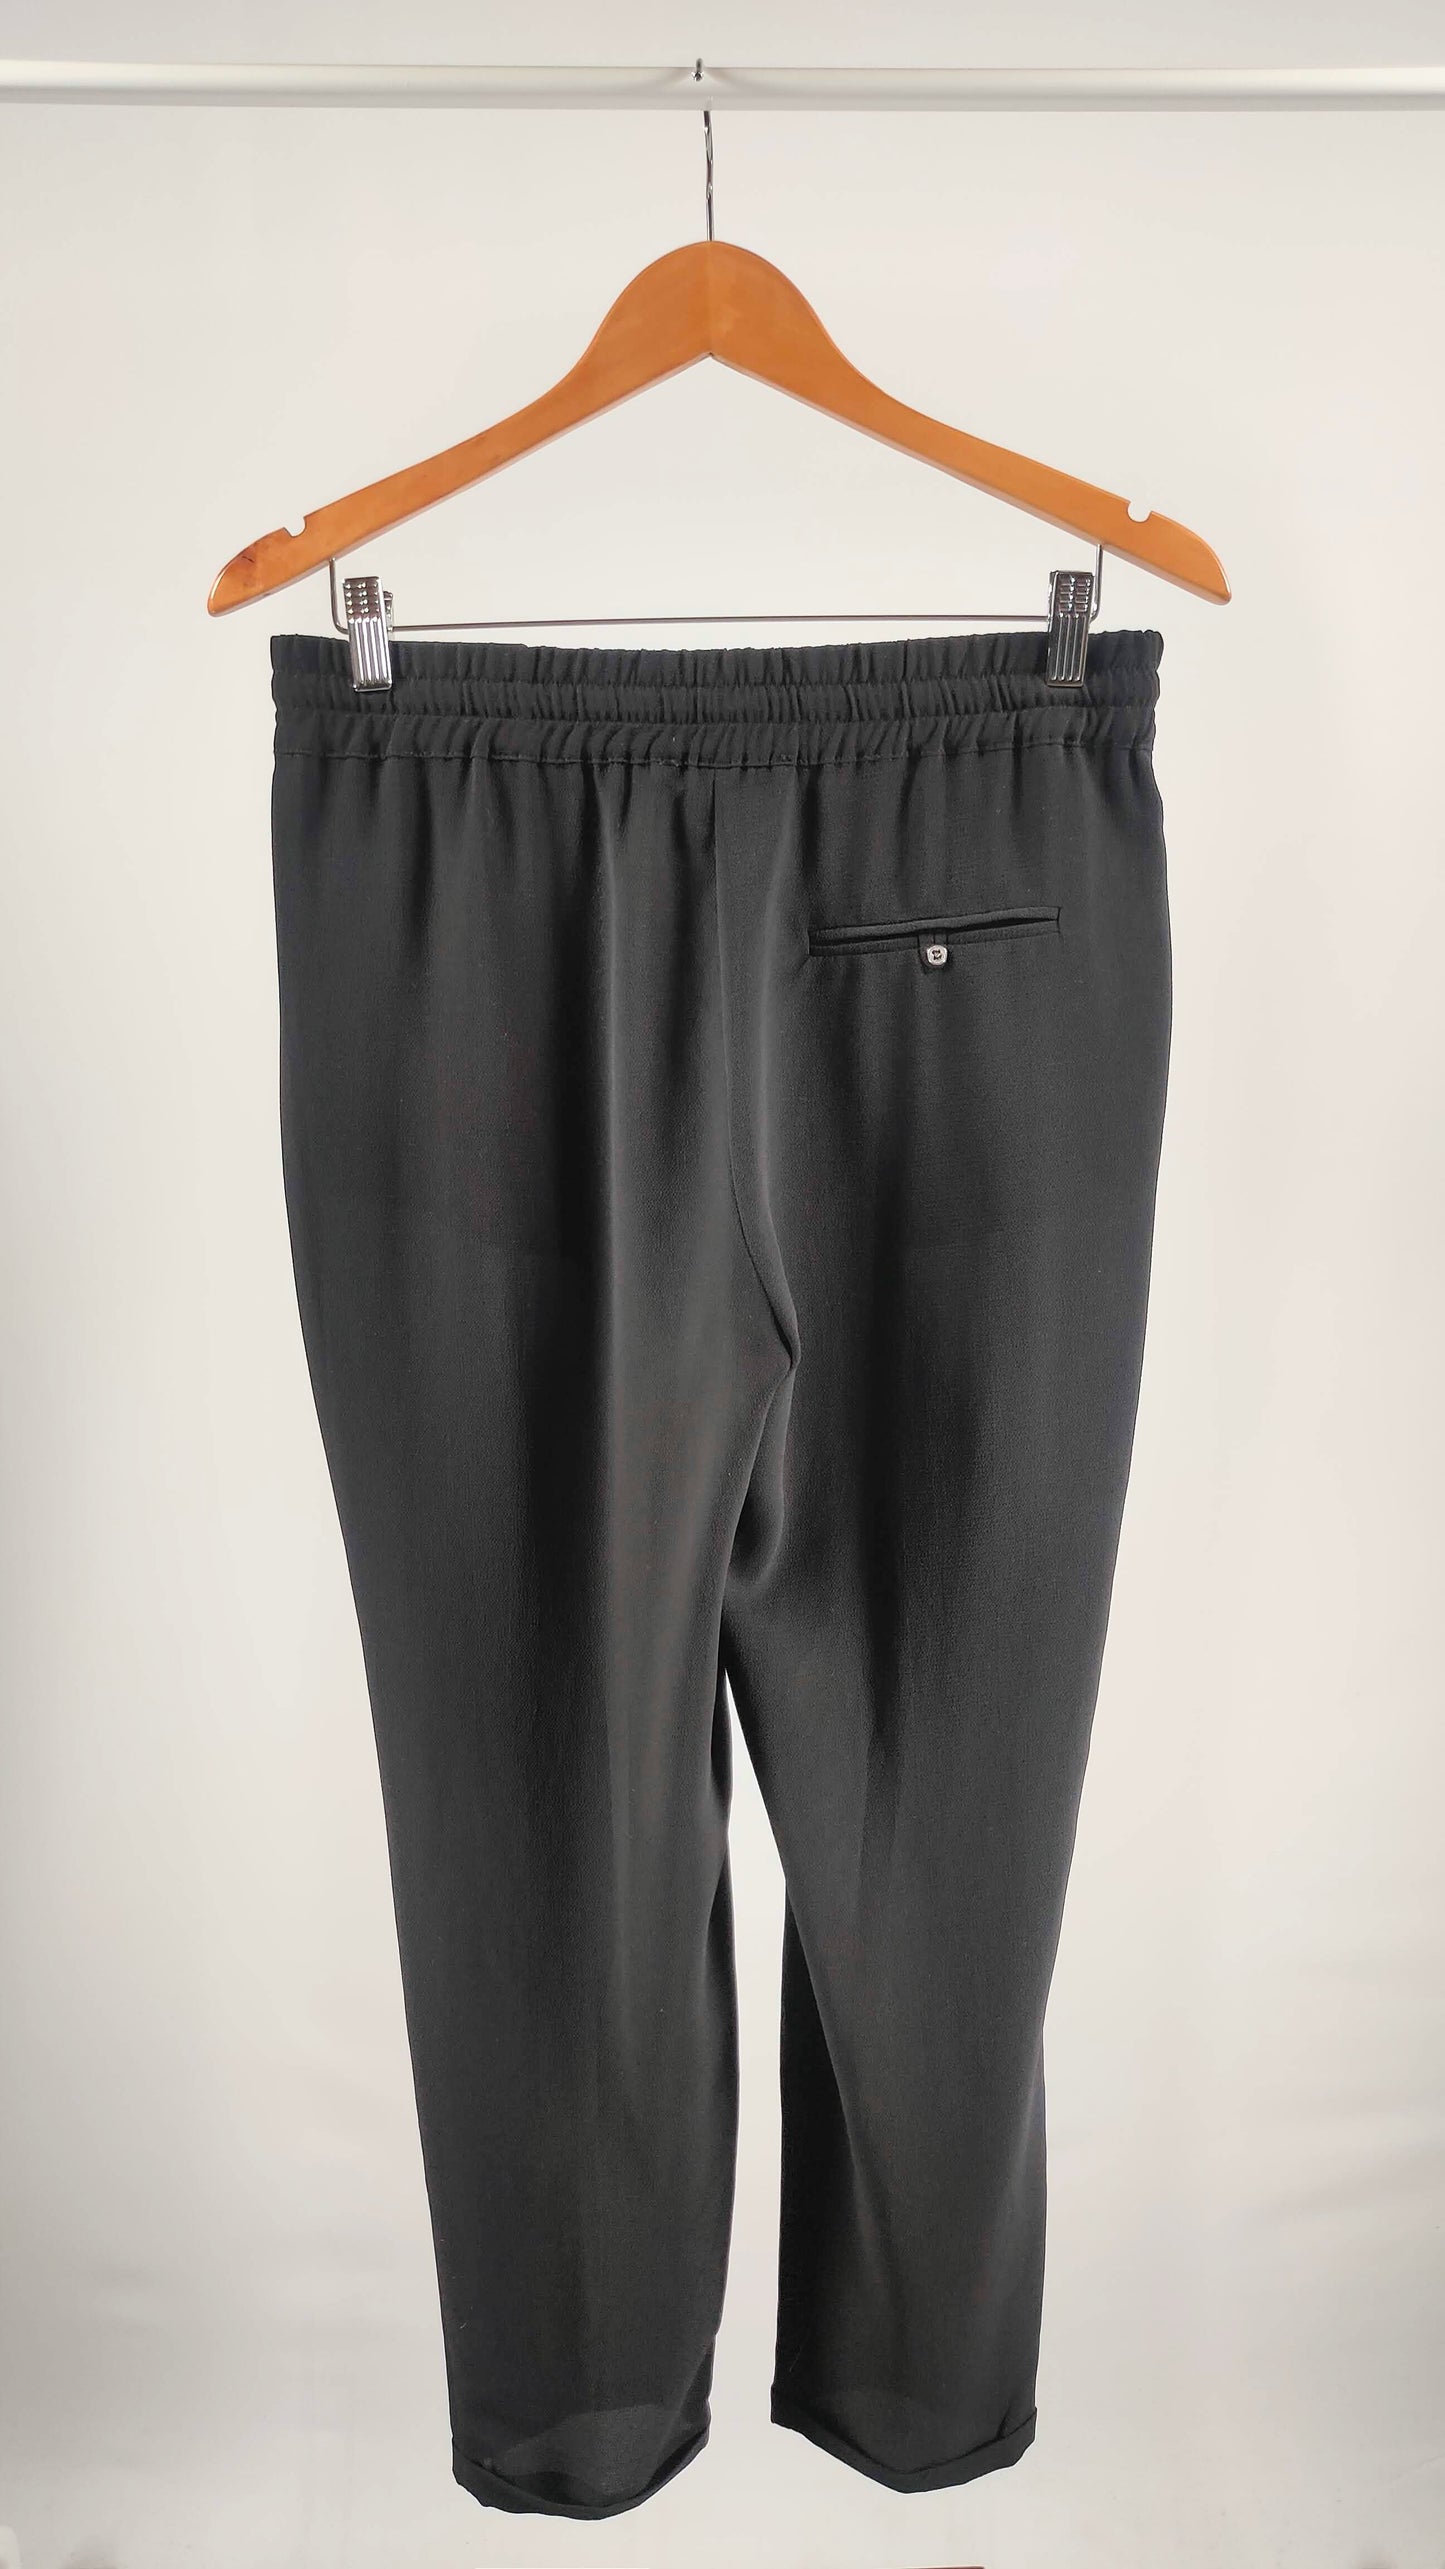 Pantalones holgados con bolsillos y cintura ajustable